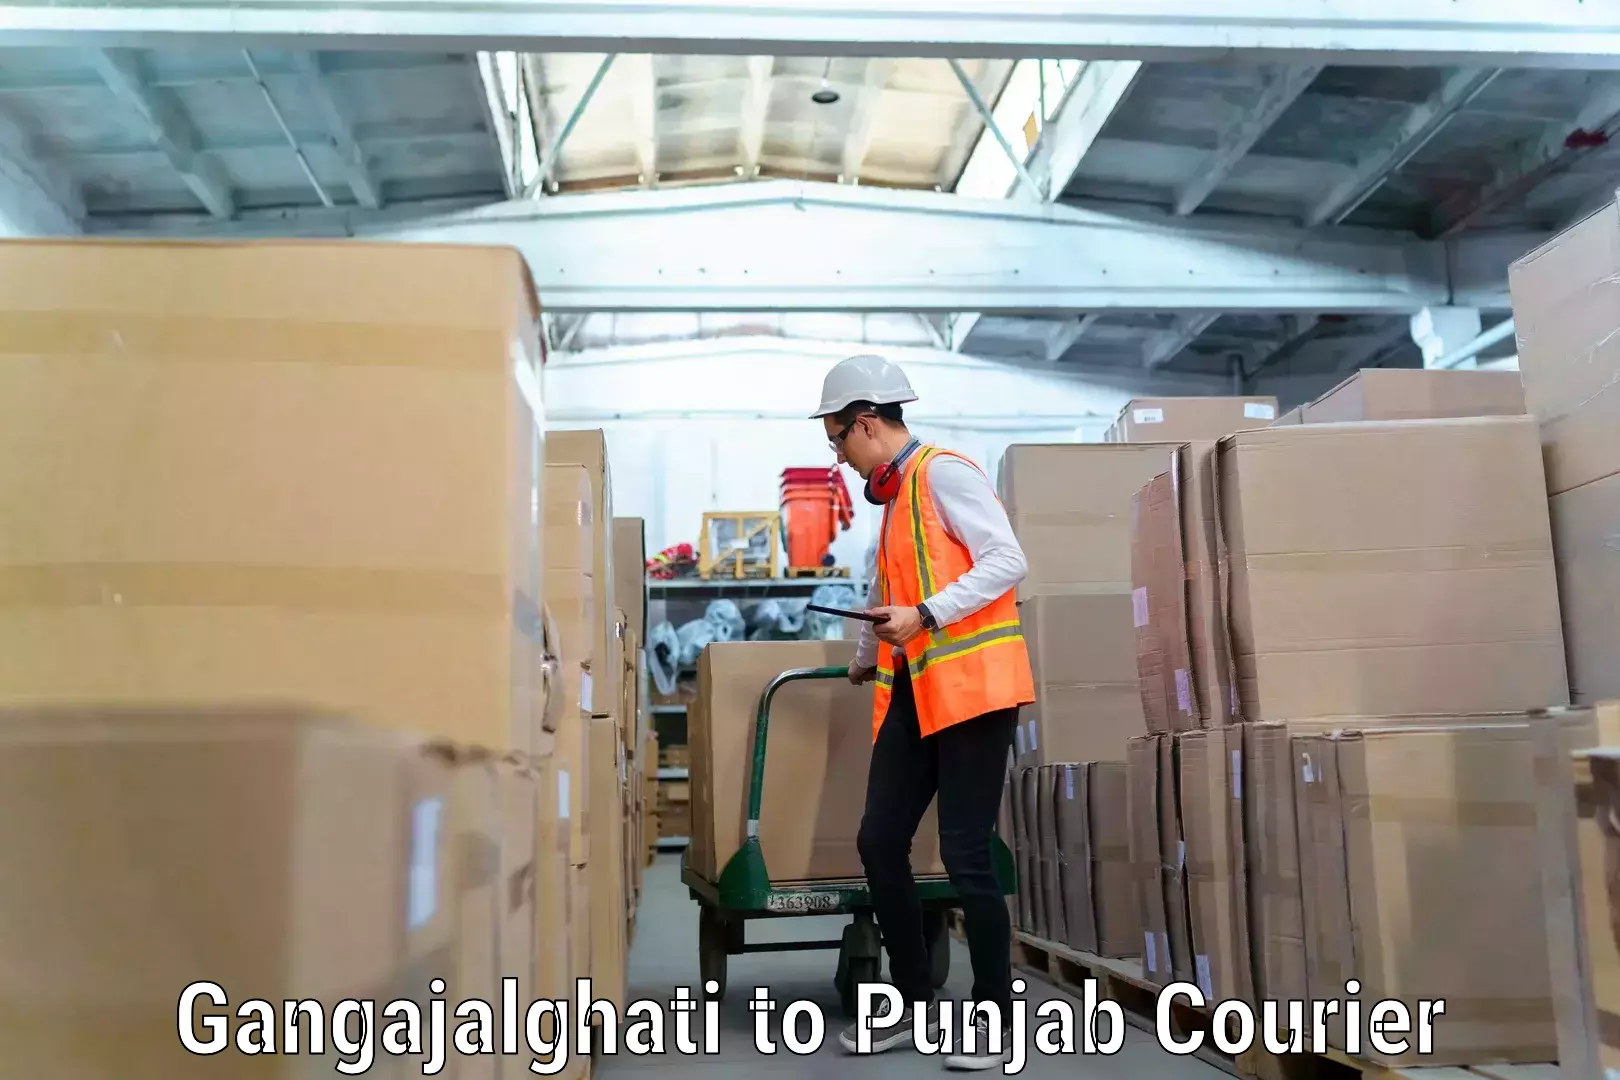 Furniture moving experts Gangajalghati to Punjab